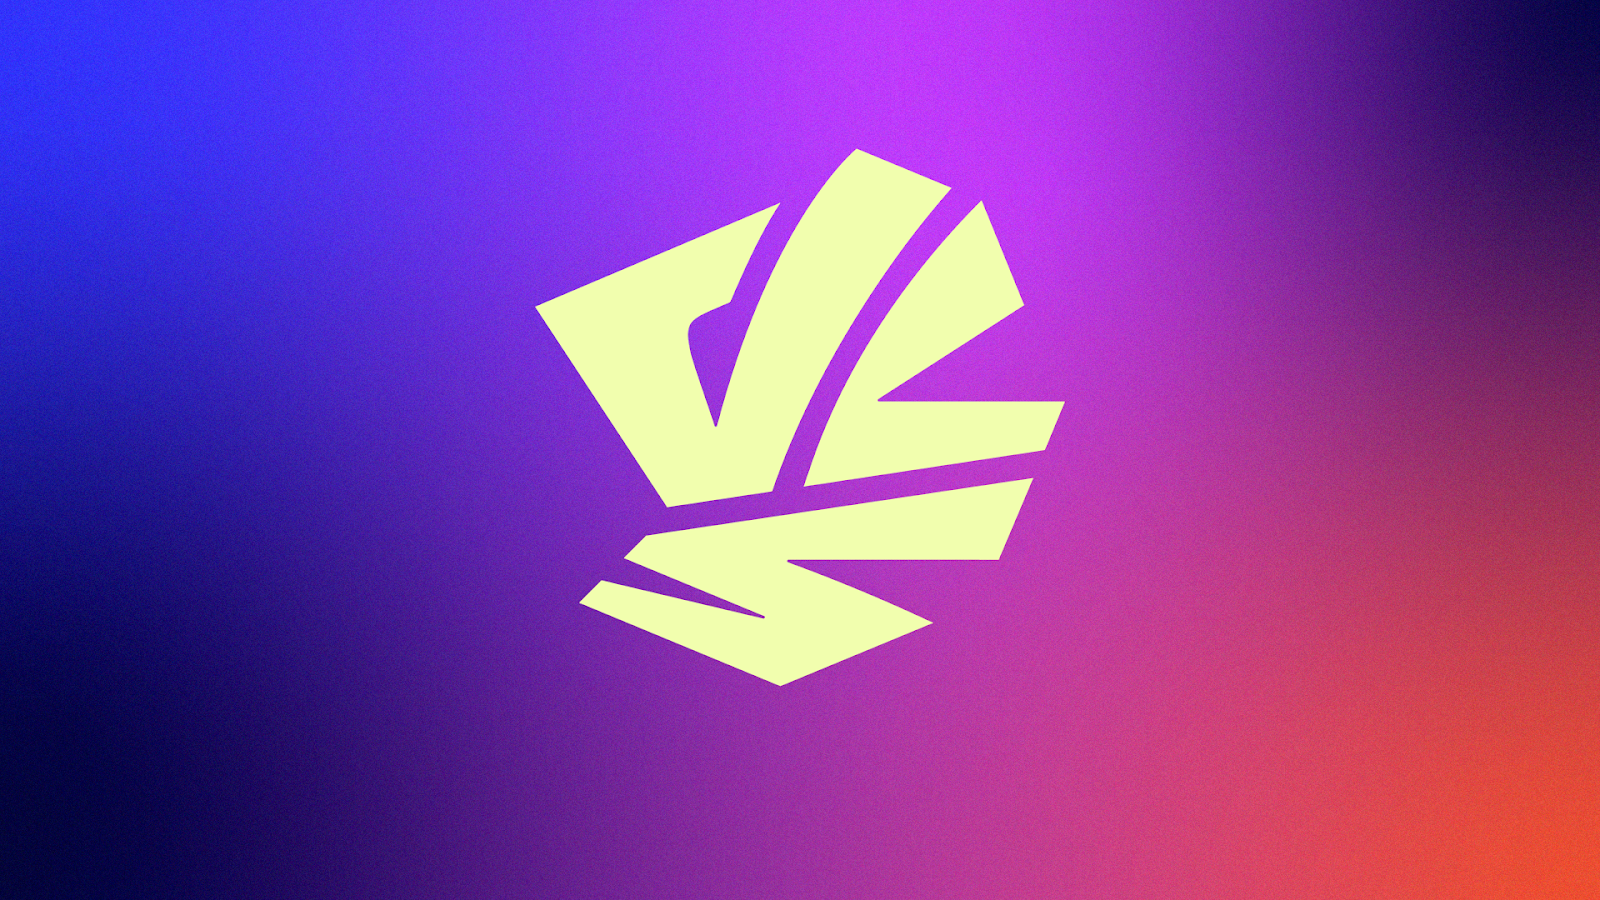 VCS Mùa Xuân và Mùa Hè sẽ đổi tên thành Hừng Đông và Hoàng Hôn - nguồn: VNGGames